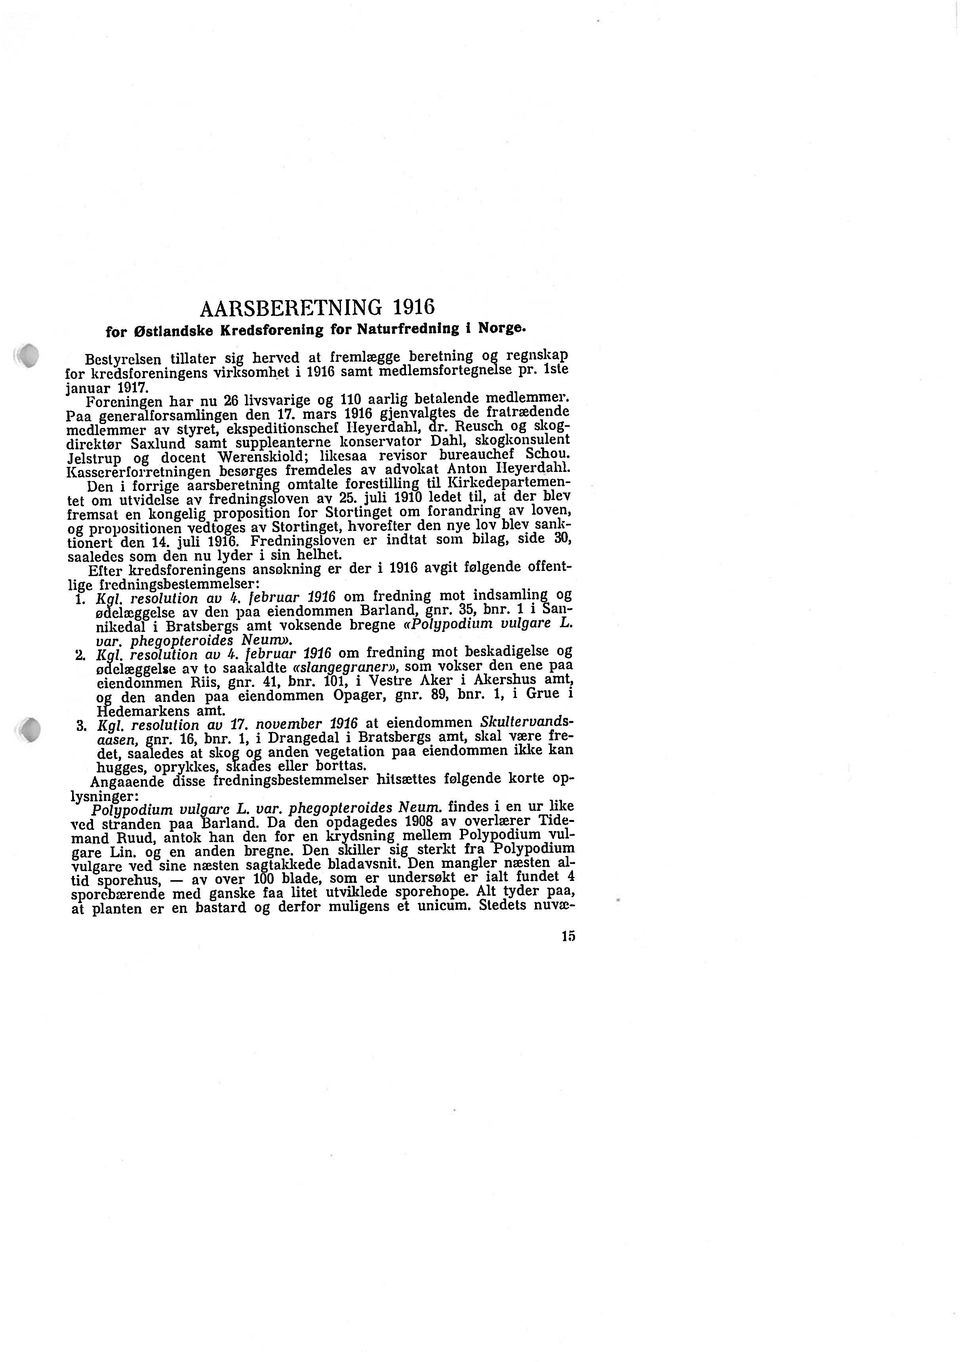 AARSBERETNING 1916 tel oni utvidelse av fredningsloven av 25. juli 1910 ledet til, at der blev frernsat en kongelig proposition for Stortinget om forandring av loven, Paa generalforsamlingen den 17.